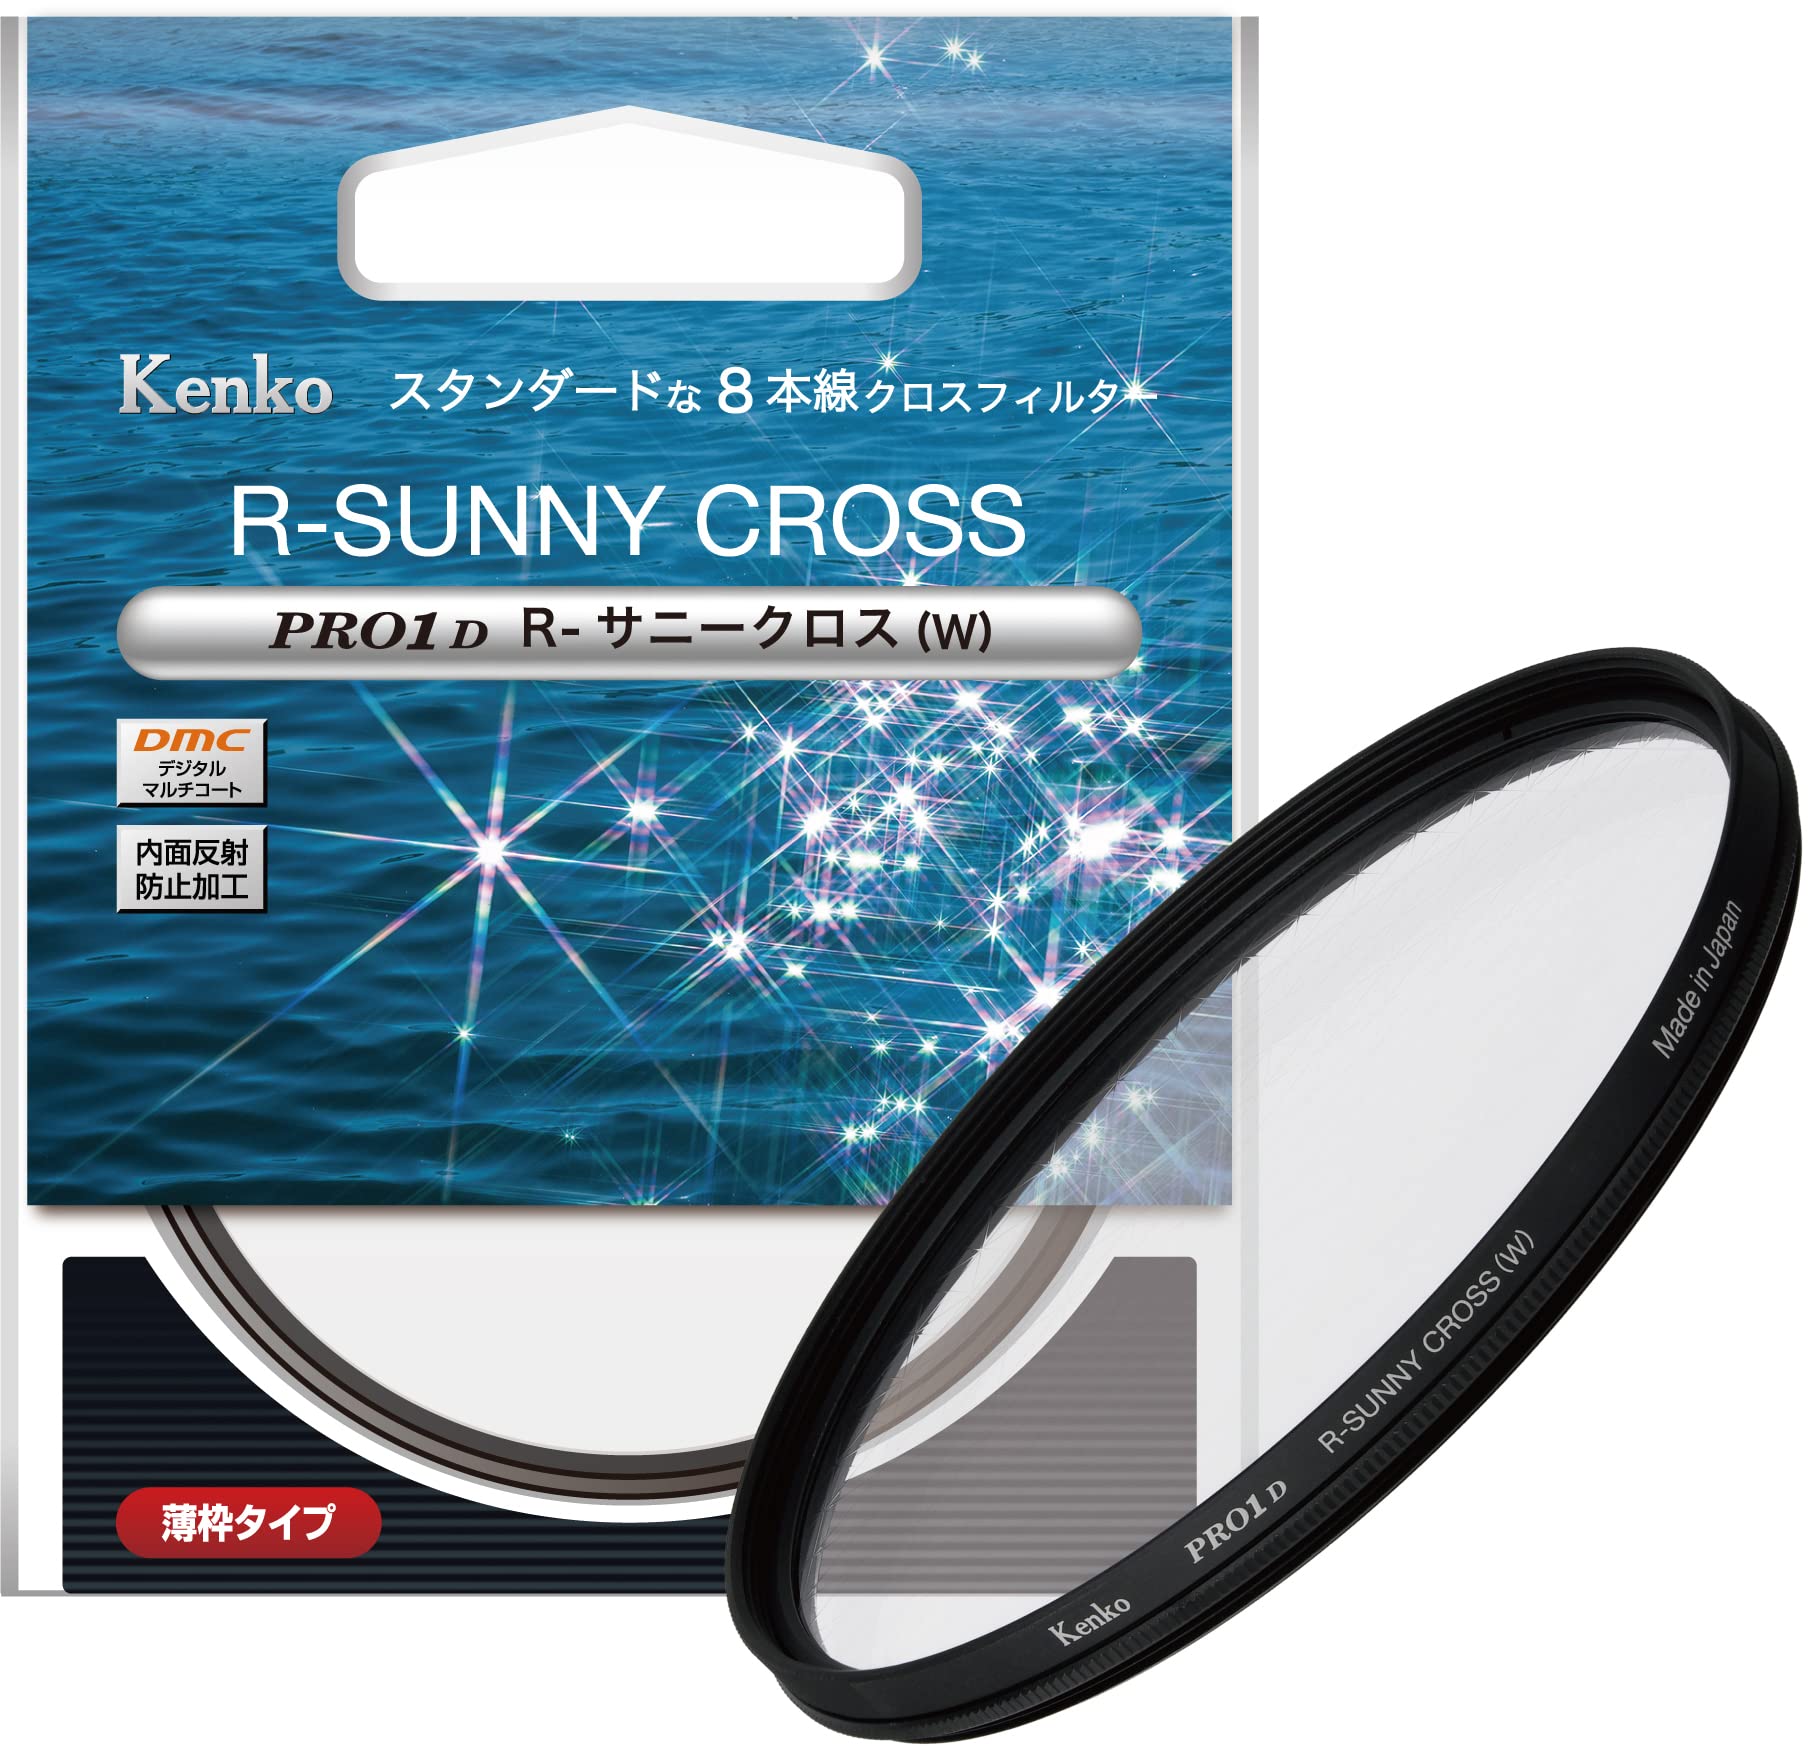 Kenko クロスフィルター PRO1D R-サニークロス (W) 82mm 8本クロス効果 夜景・イルミネーション・光の..